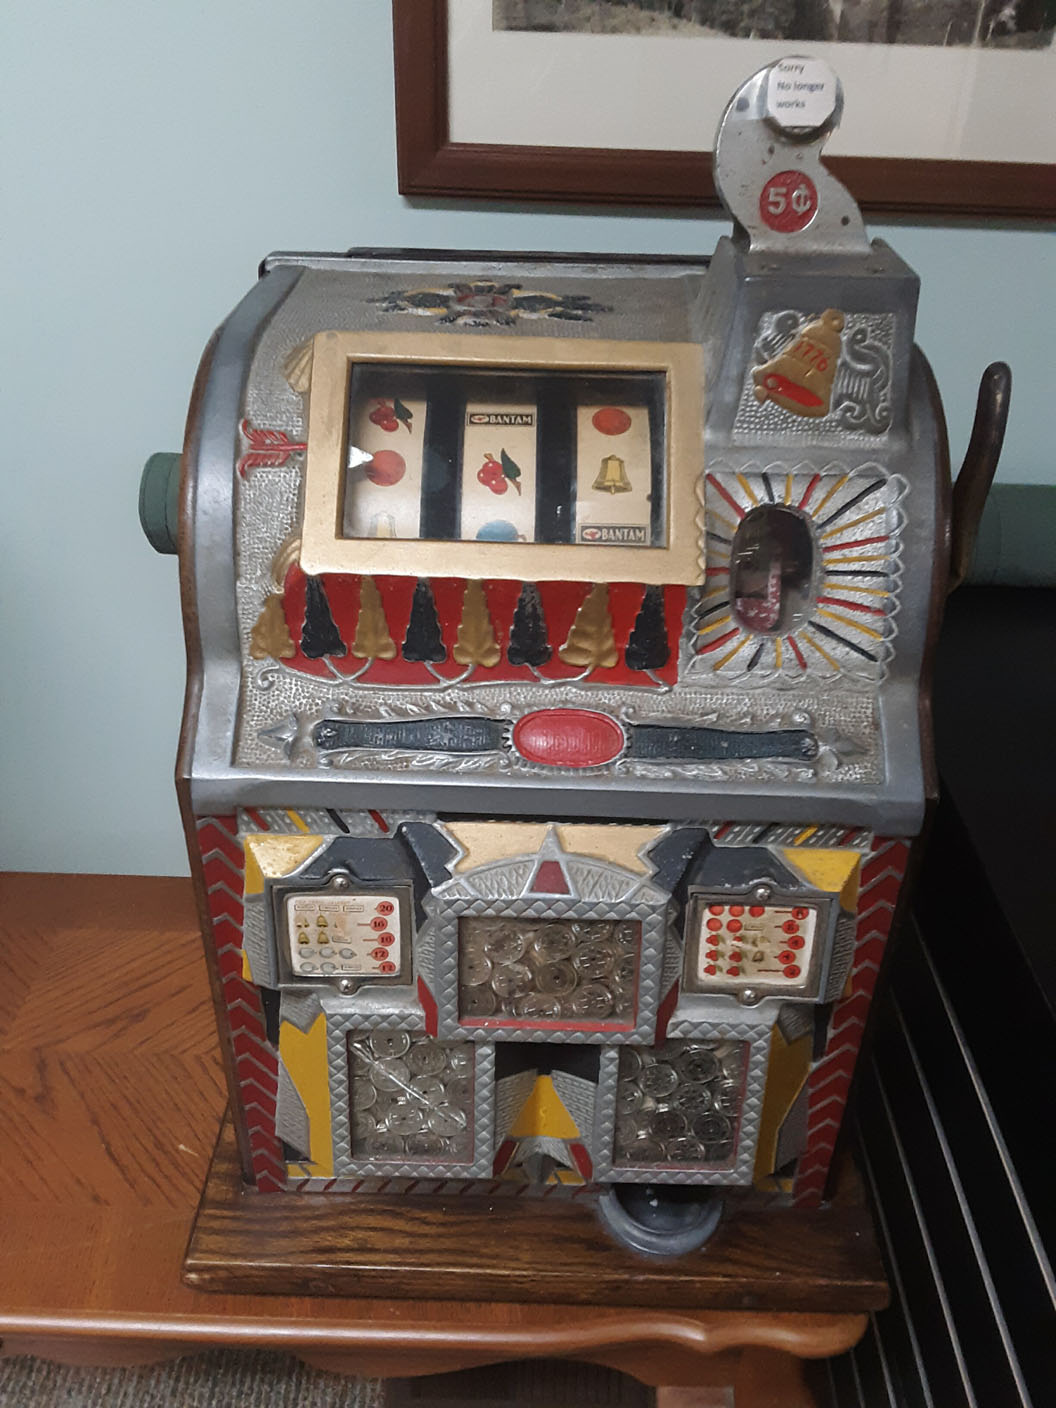 antique slot machine